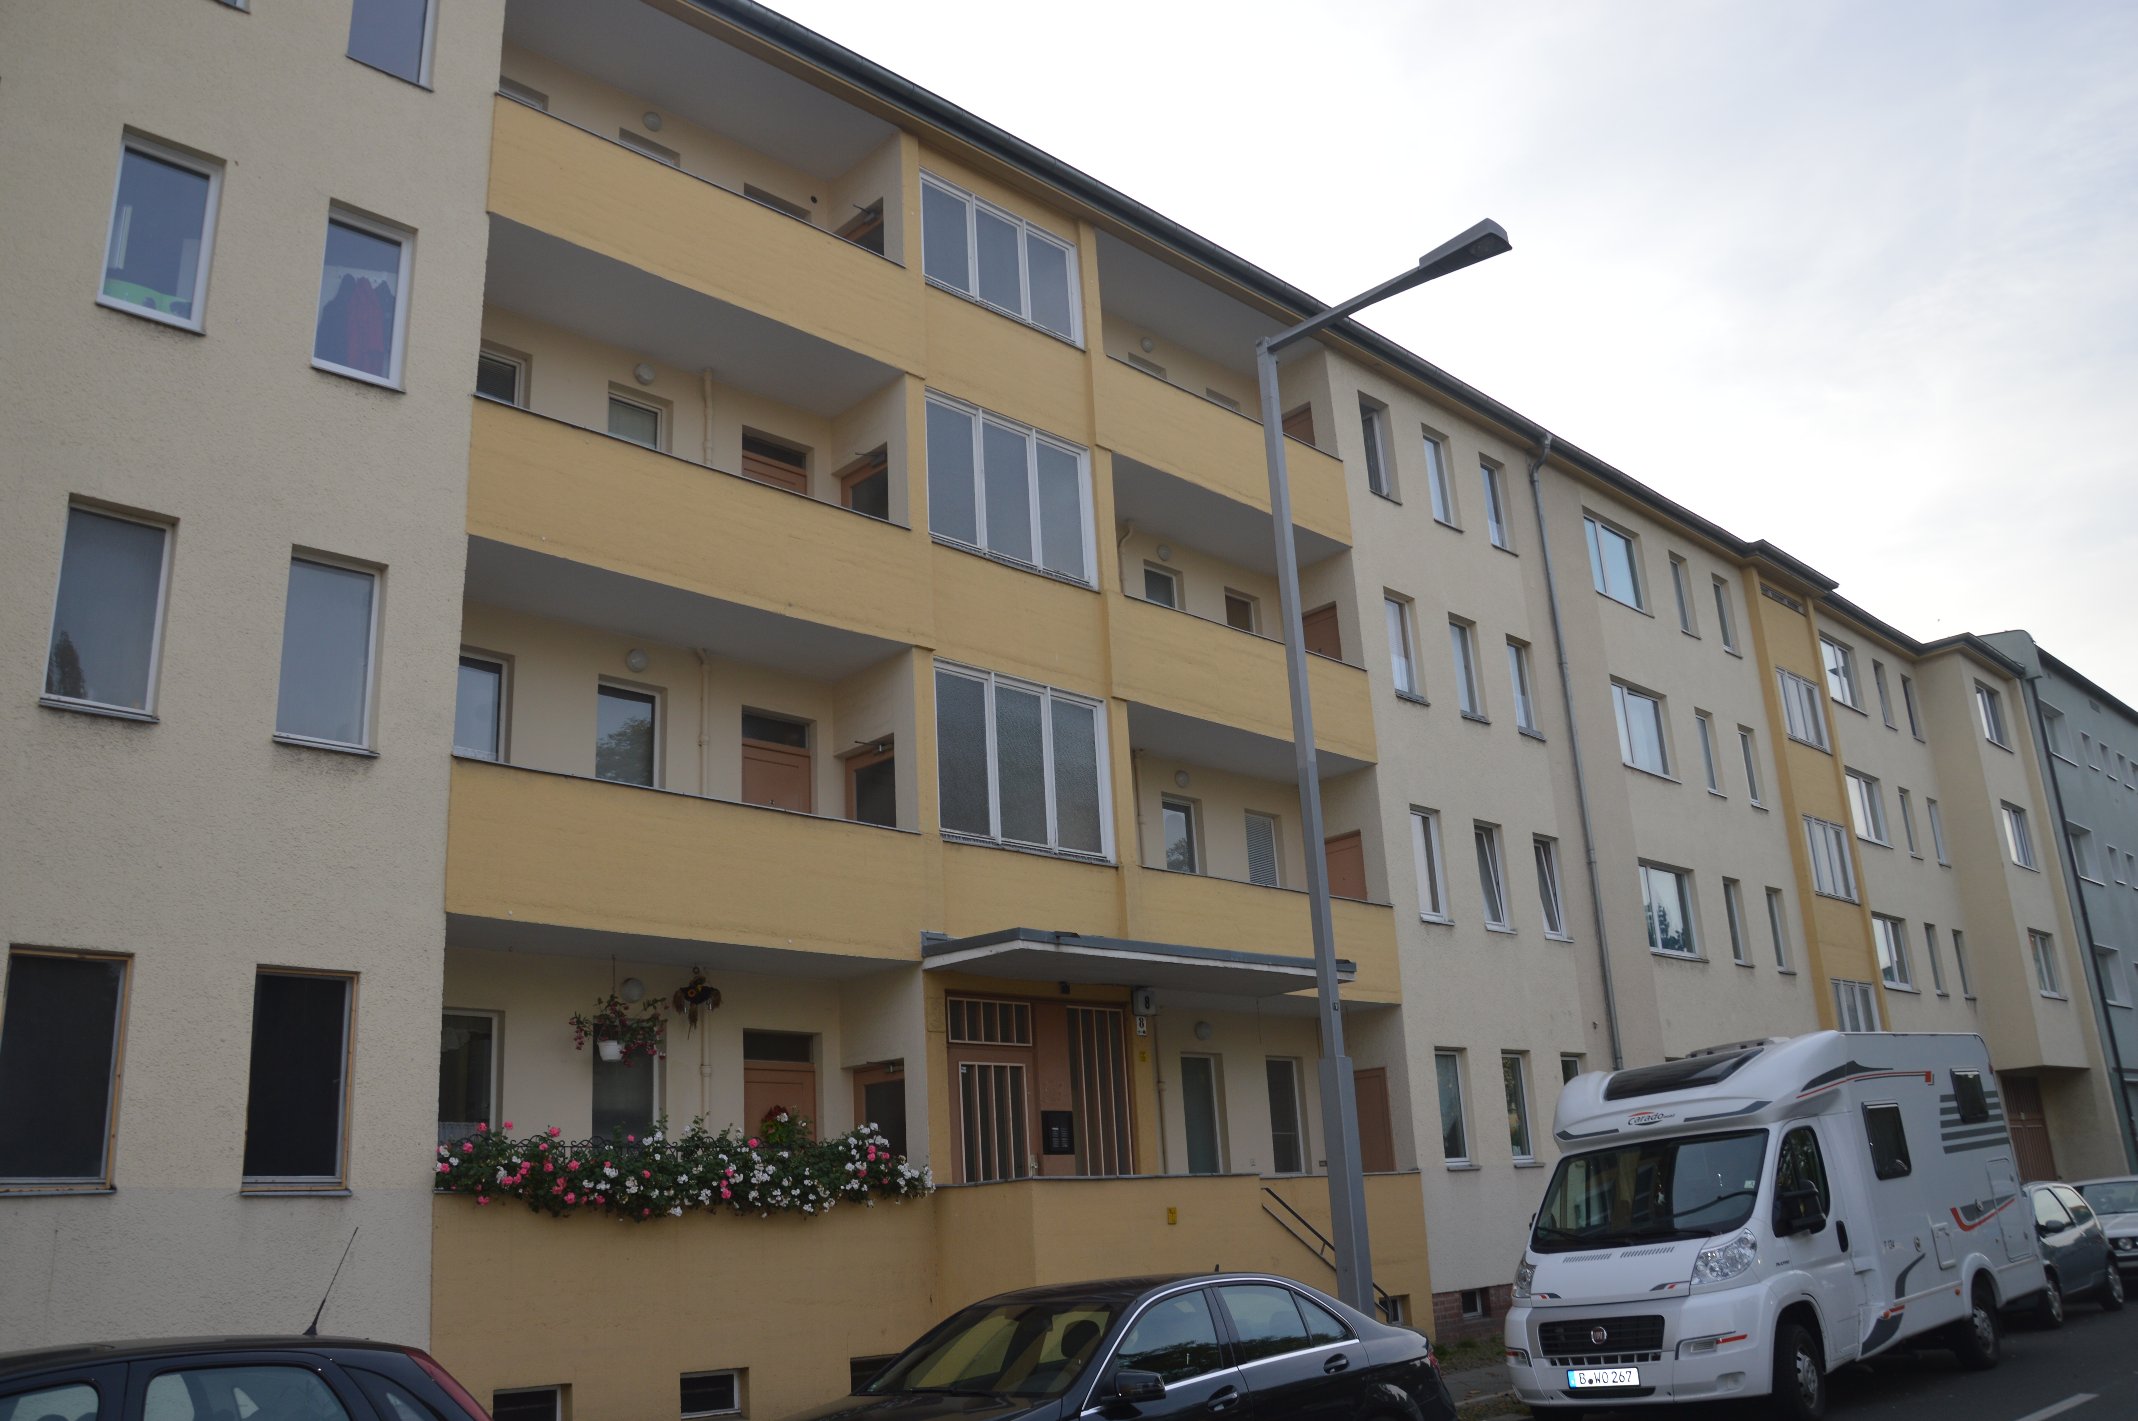 Berlin-freie sanierte Wohnung in Spandau - FAI Immobilien ...